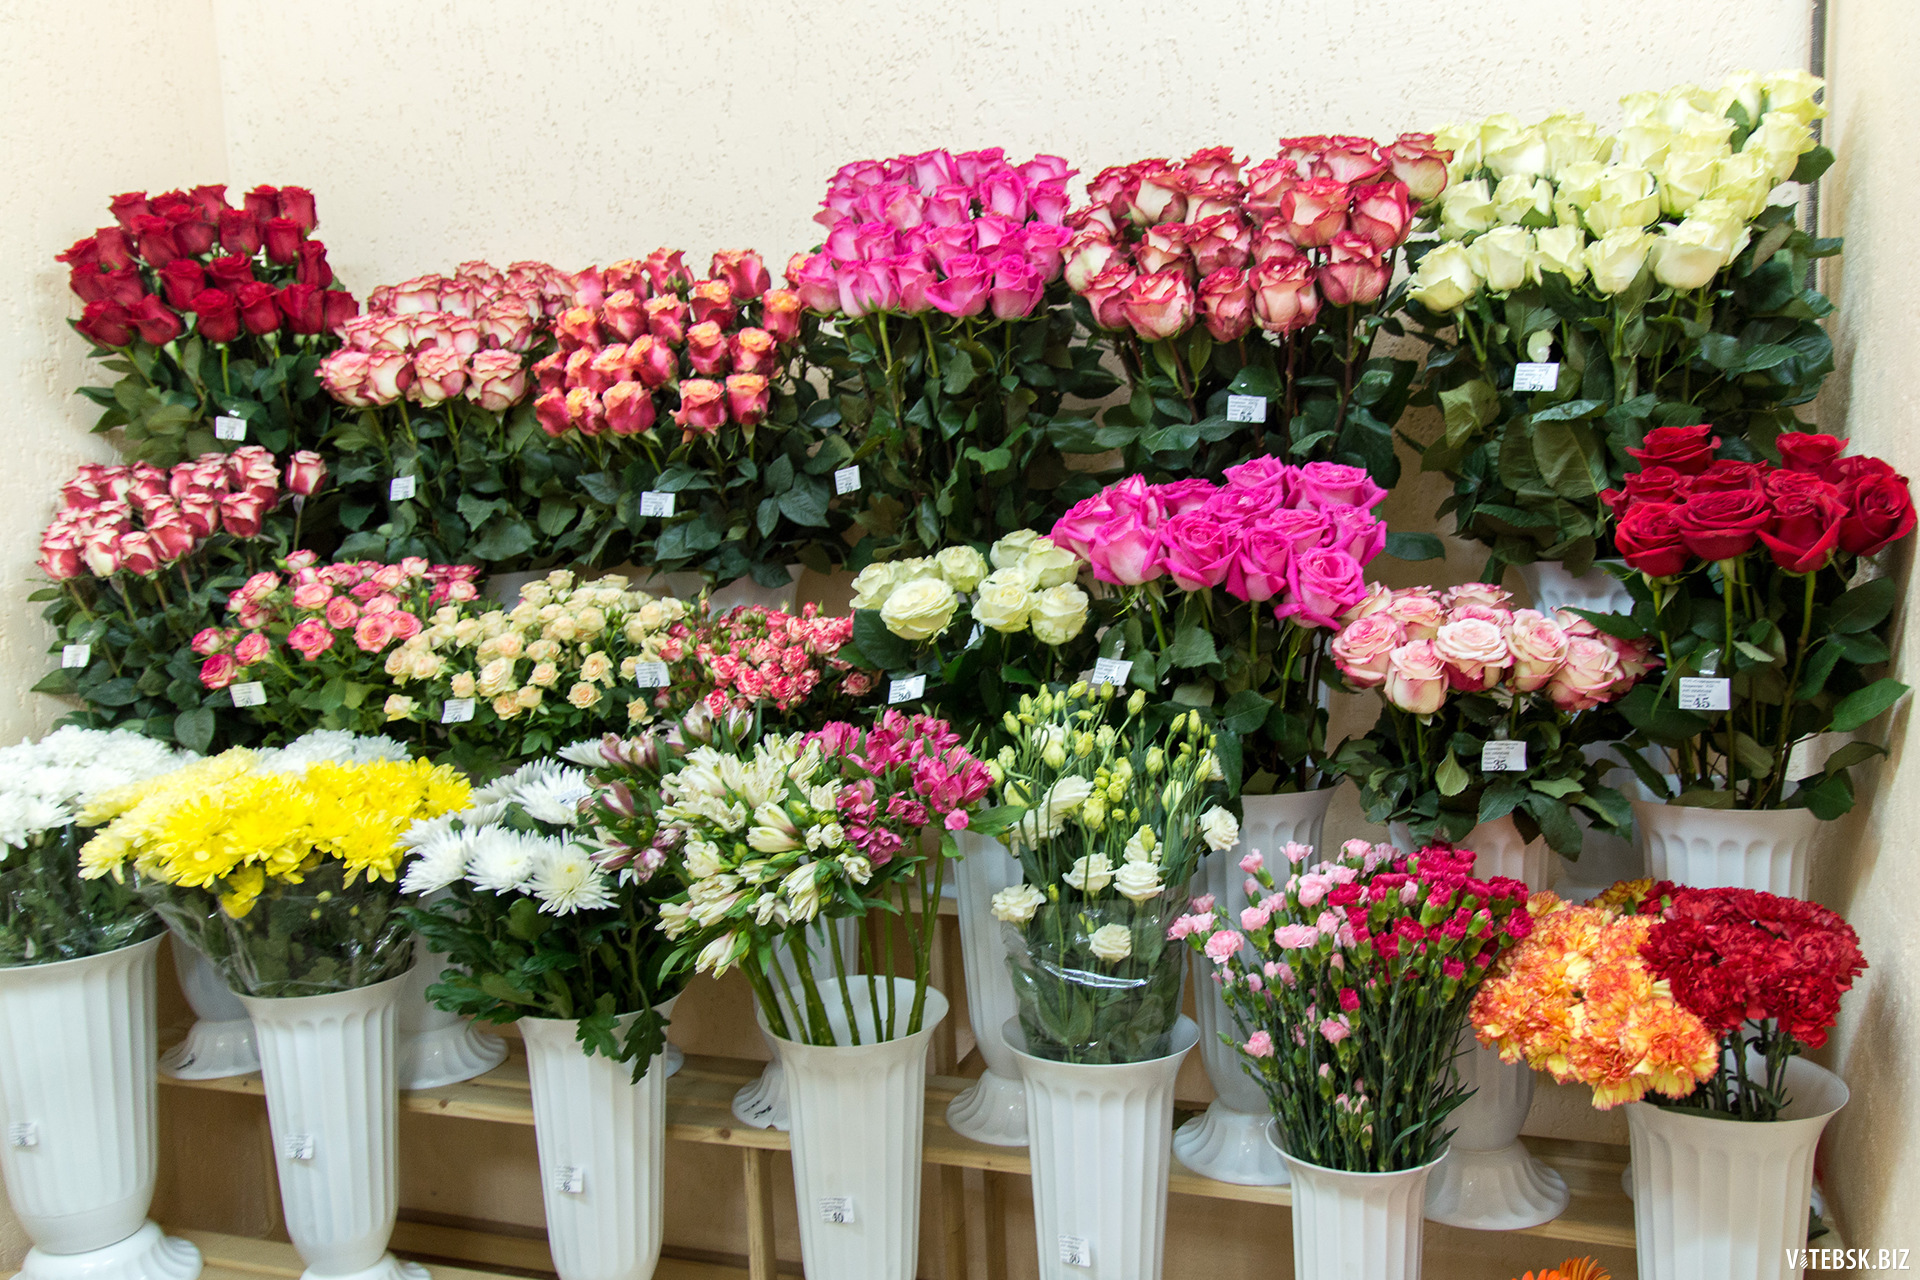 Недорогие Цветы В Подольске Где Купить